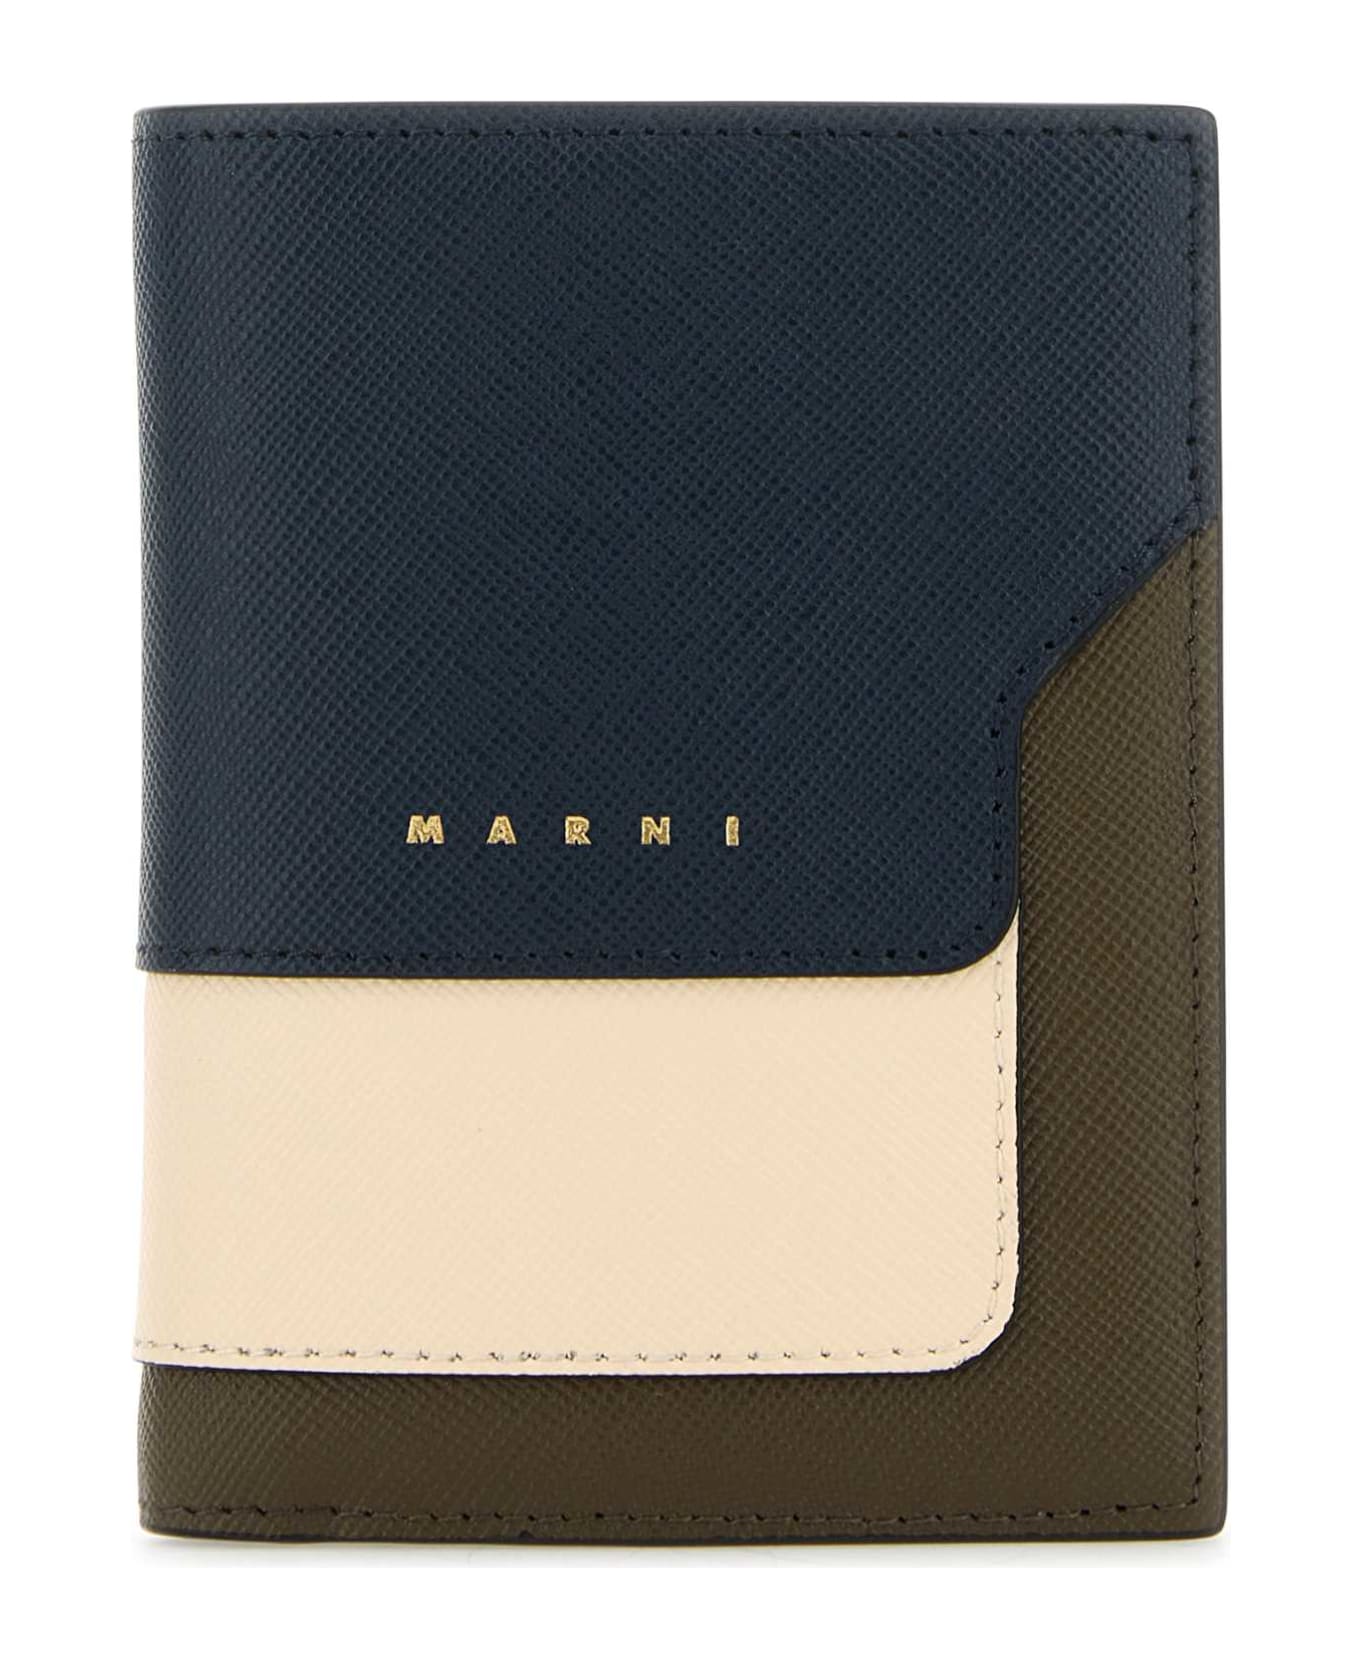 Marni Multicolor Leather Wallet - NIGHTBLUETALCDUSTYOLIVE 財布